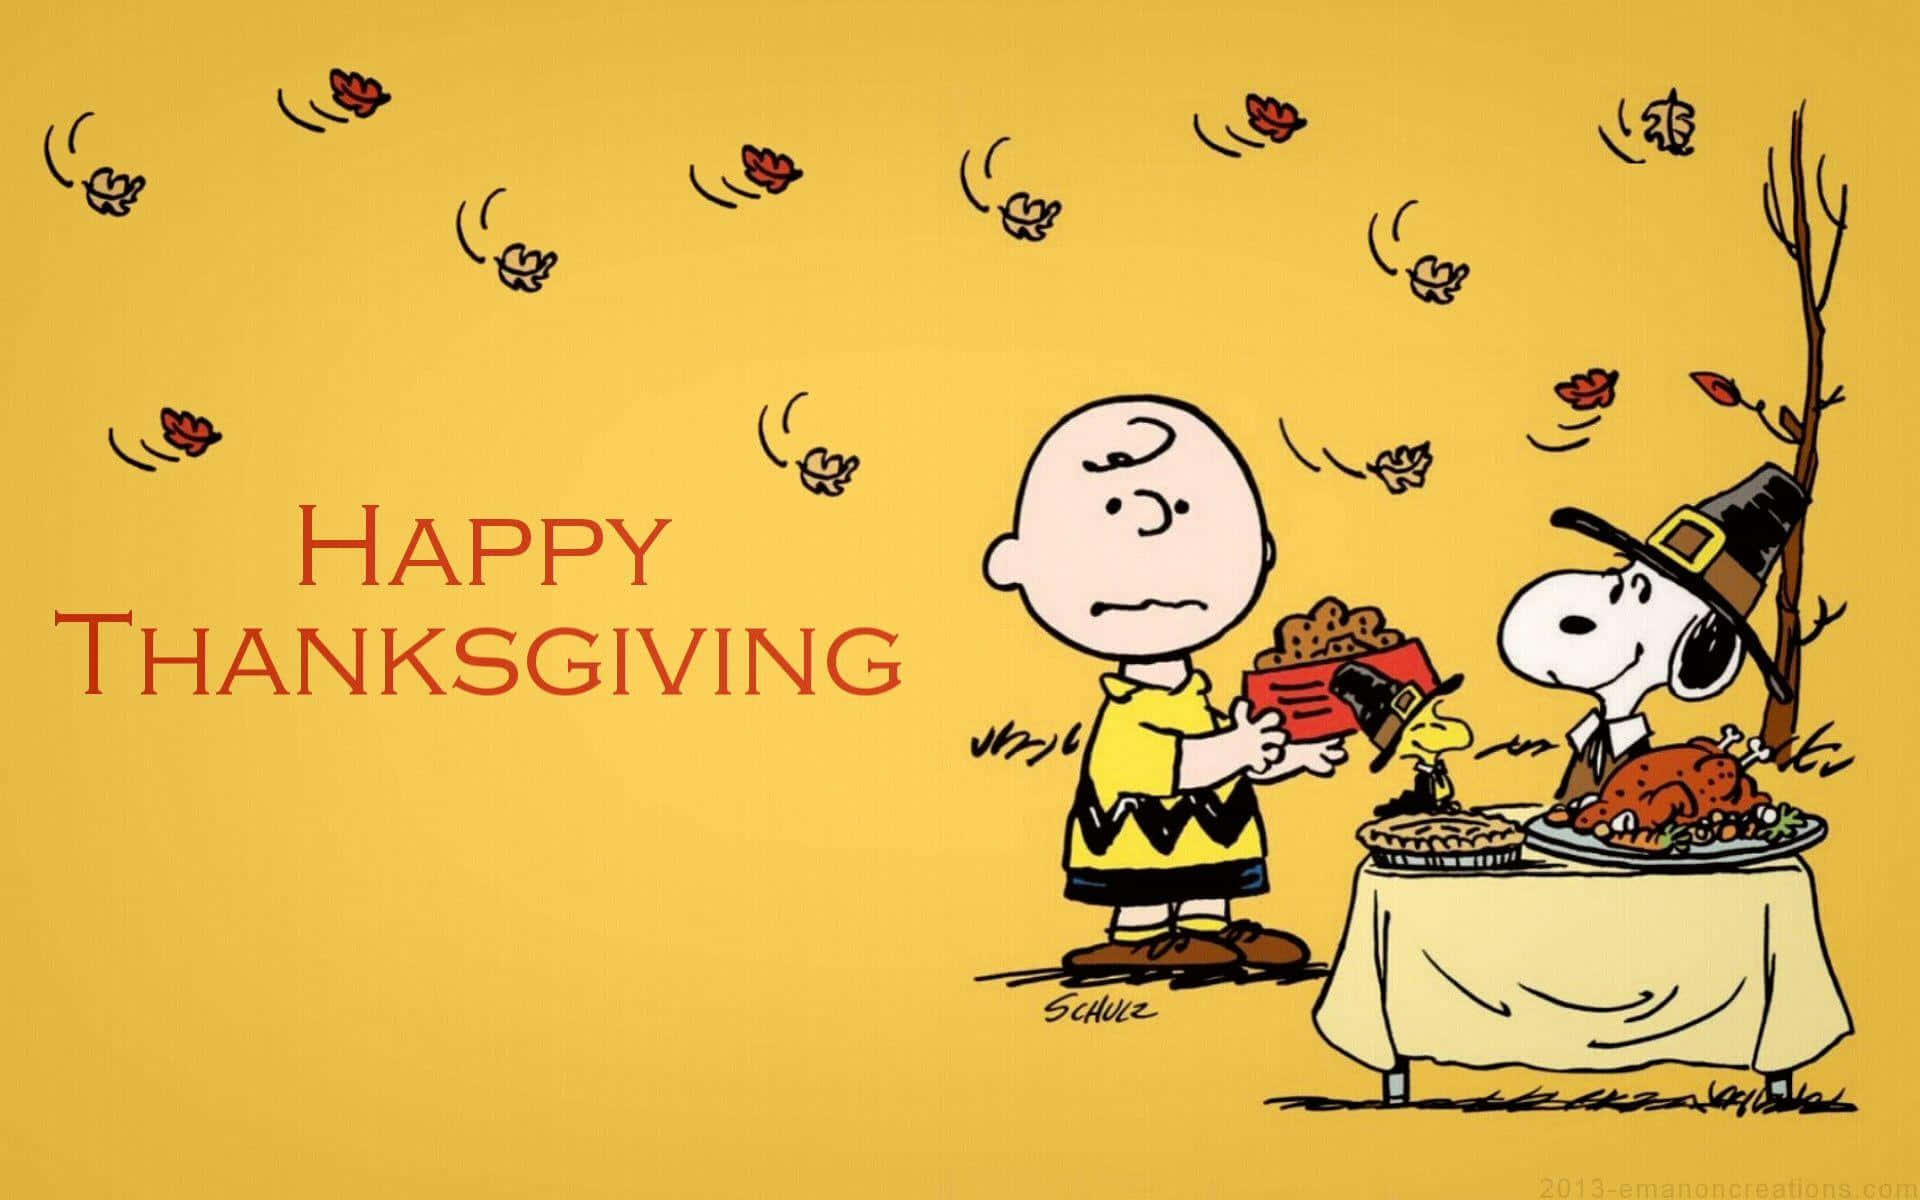 Thanksgivinghandlar Om Familjetid, Särskilt Med Din Bästa Vän! Wallpaper